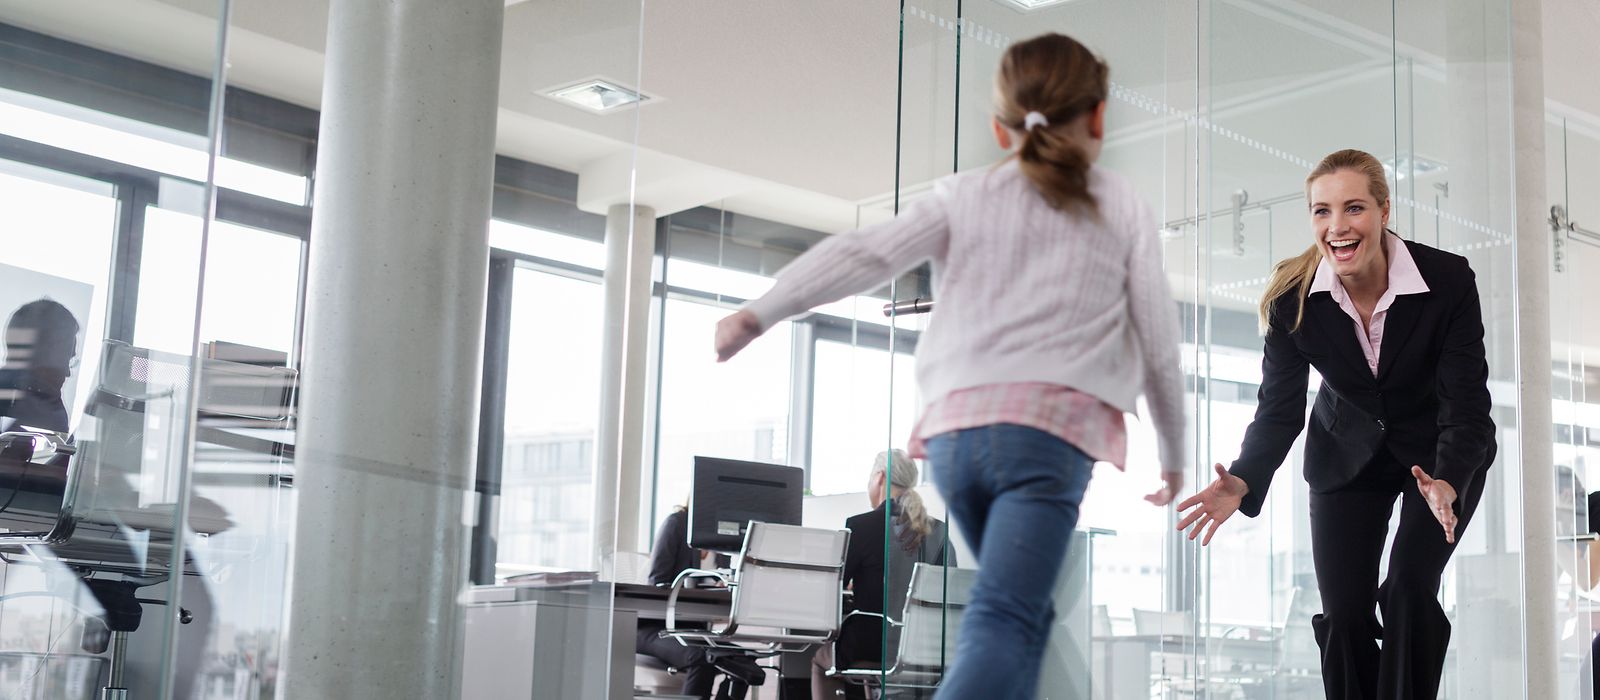 Bild zeigt: Ein Kind rennt auf eine Frau in einem Büro zu.